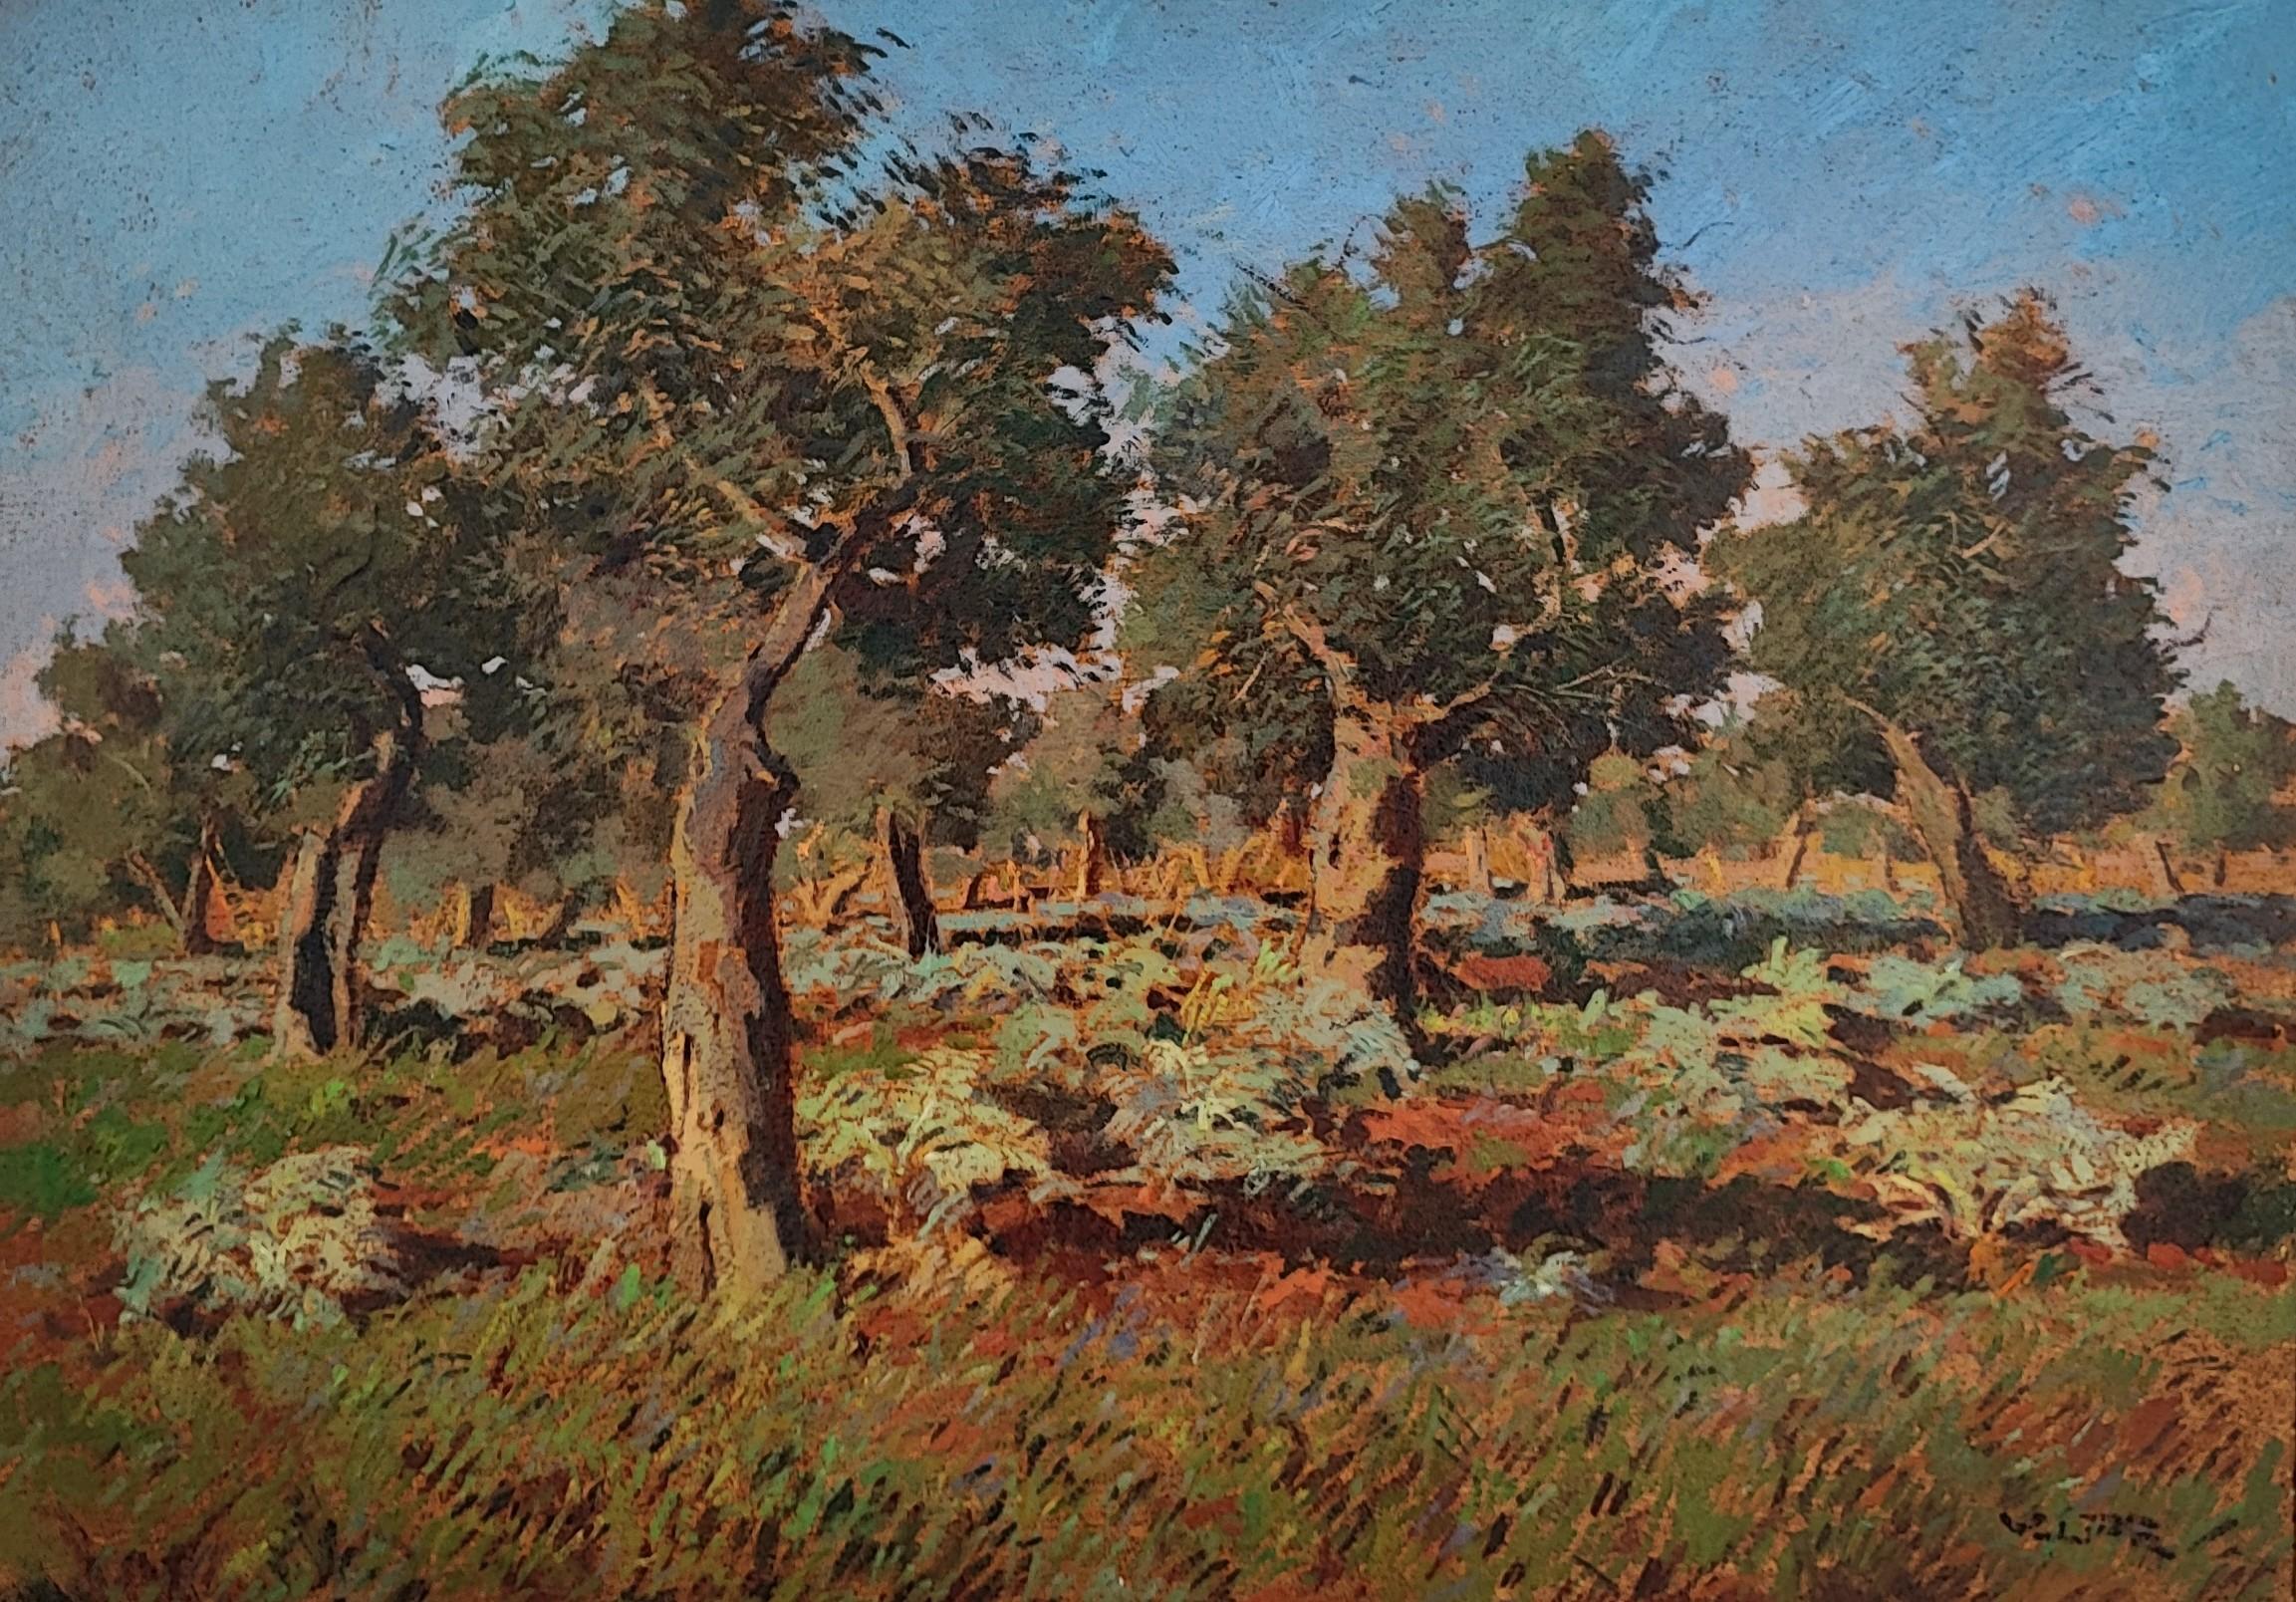 Landscape Painting Angelo Volpe - Jardinière d'olivier de Livorno Salviano avec artichauts